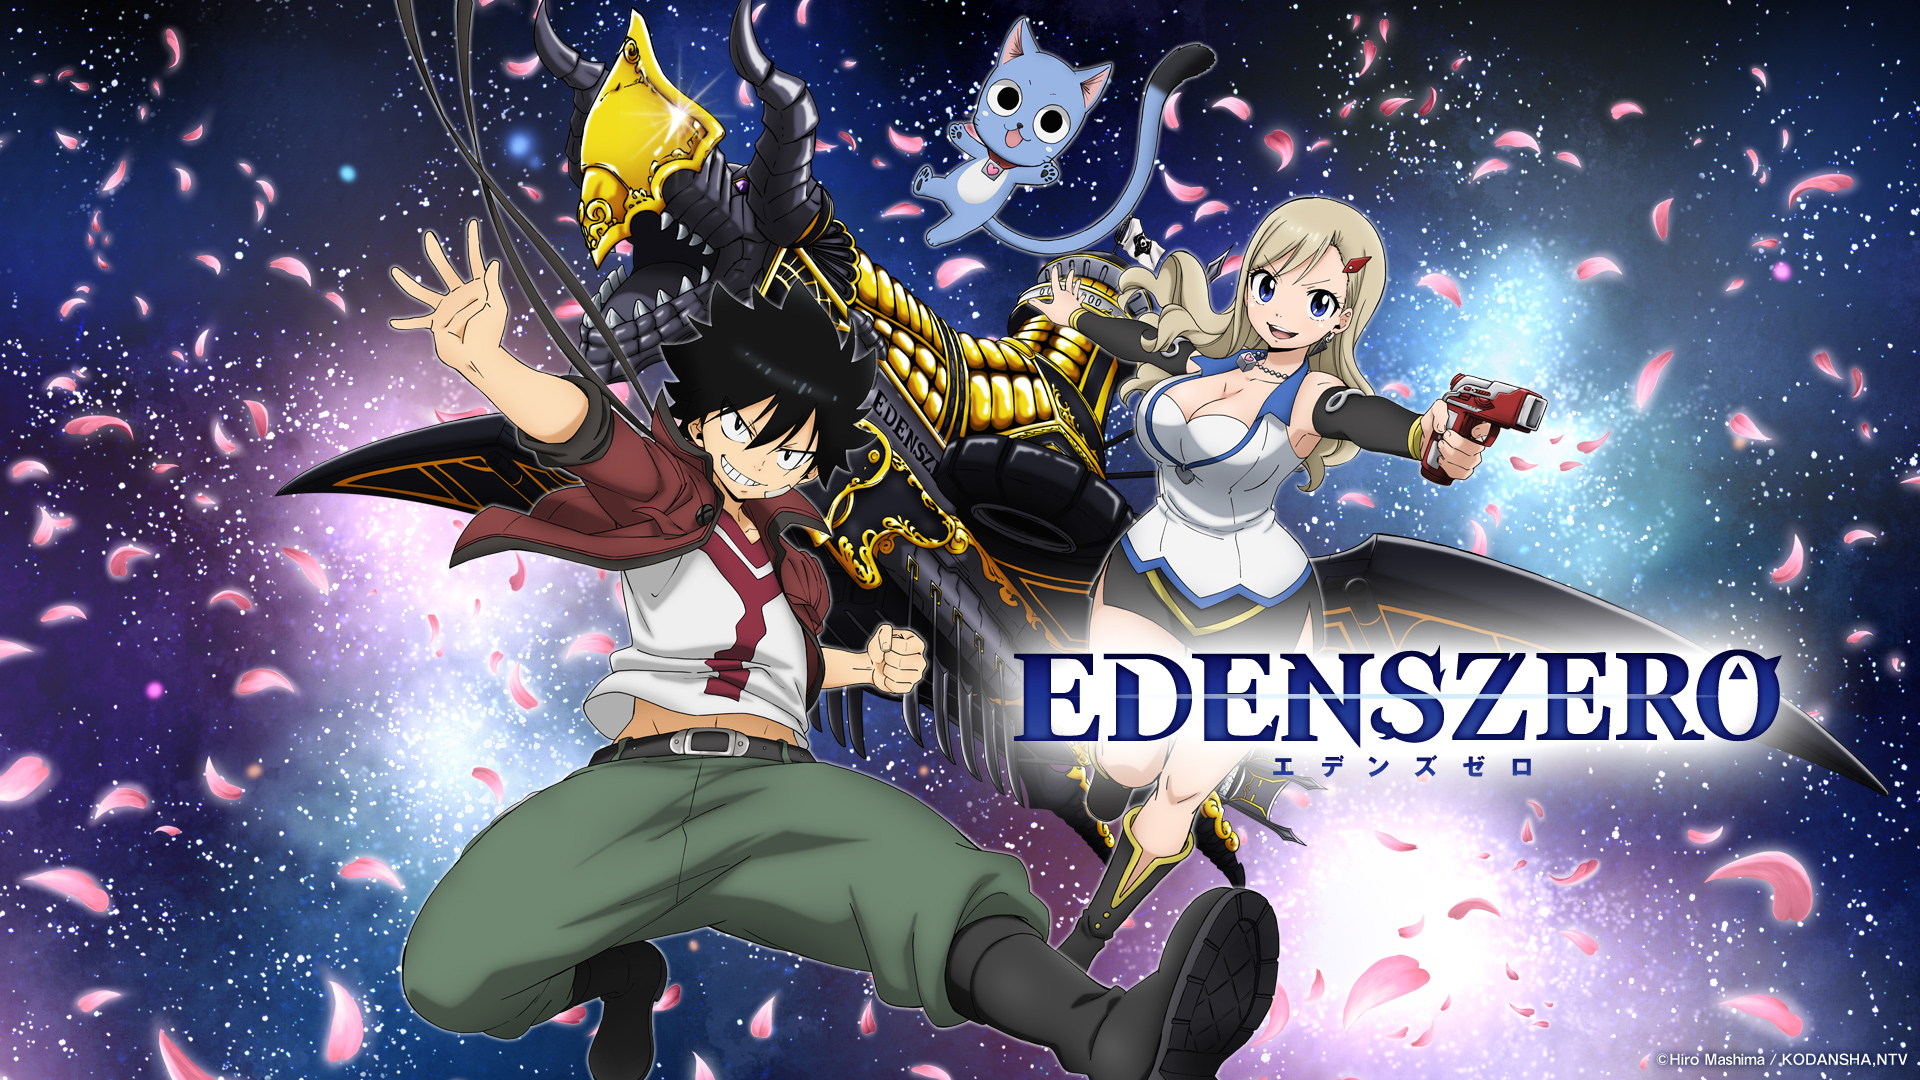 Imagem promocional de Edens Zero 2